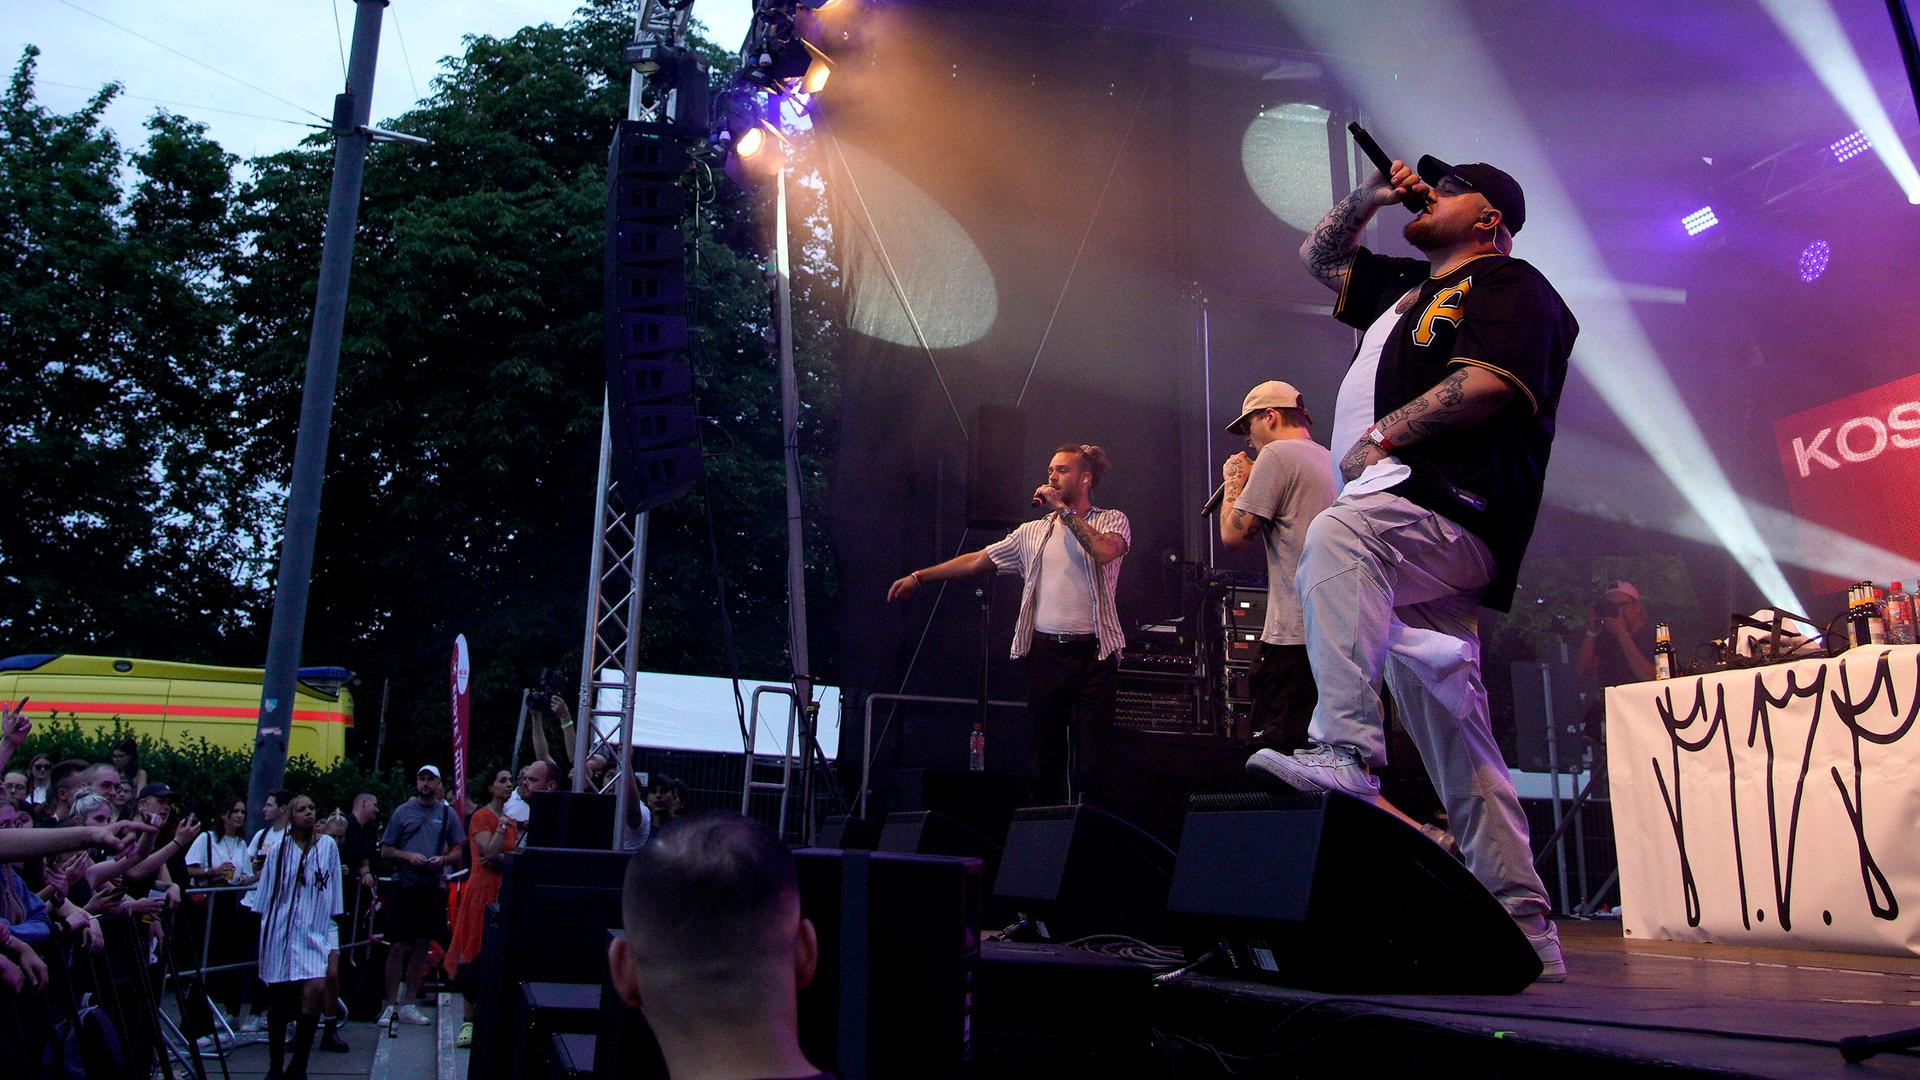 Der Rapper Lugatti steht bei einem Konzert mit einem Mikrofon in der Hand auf der Bühne.